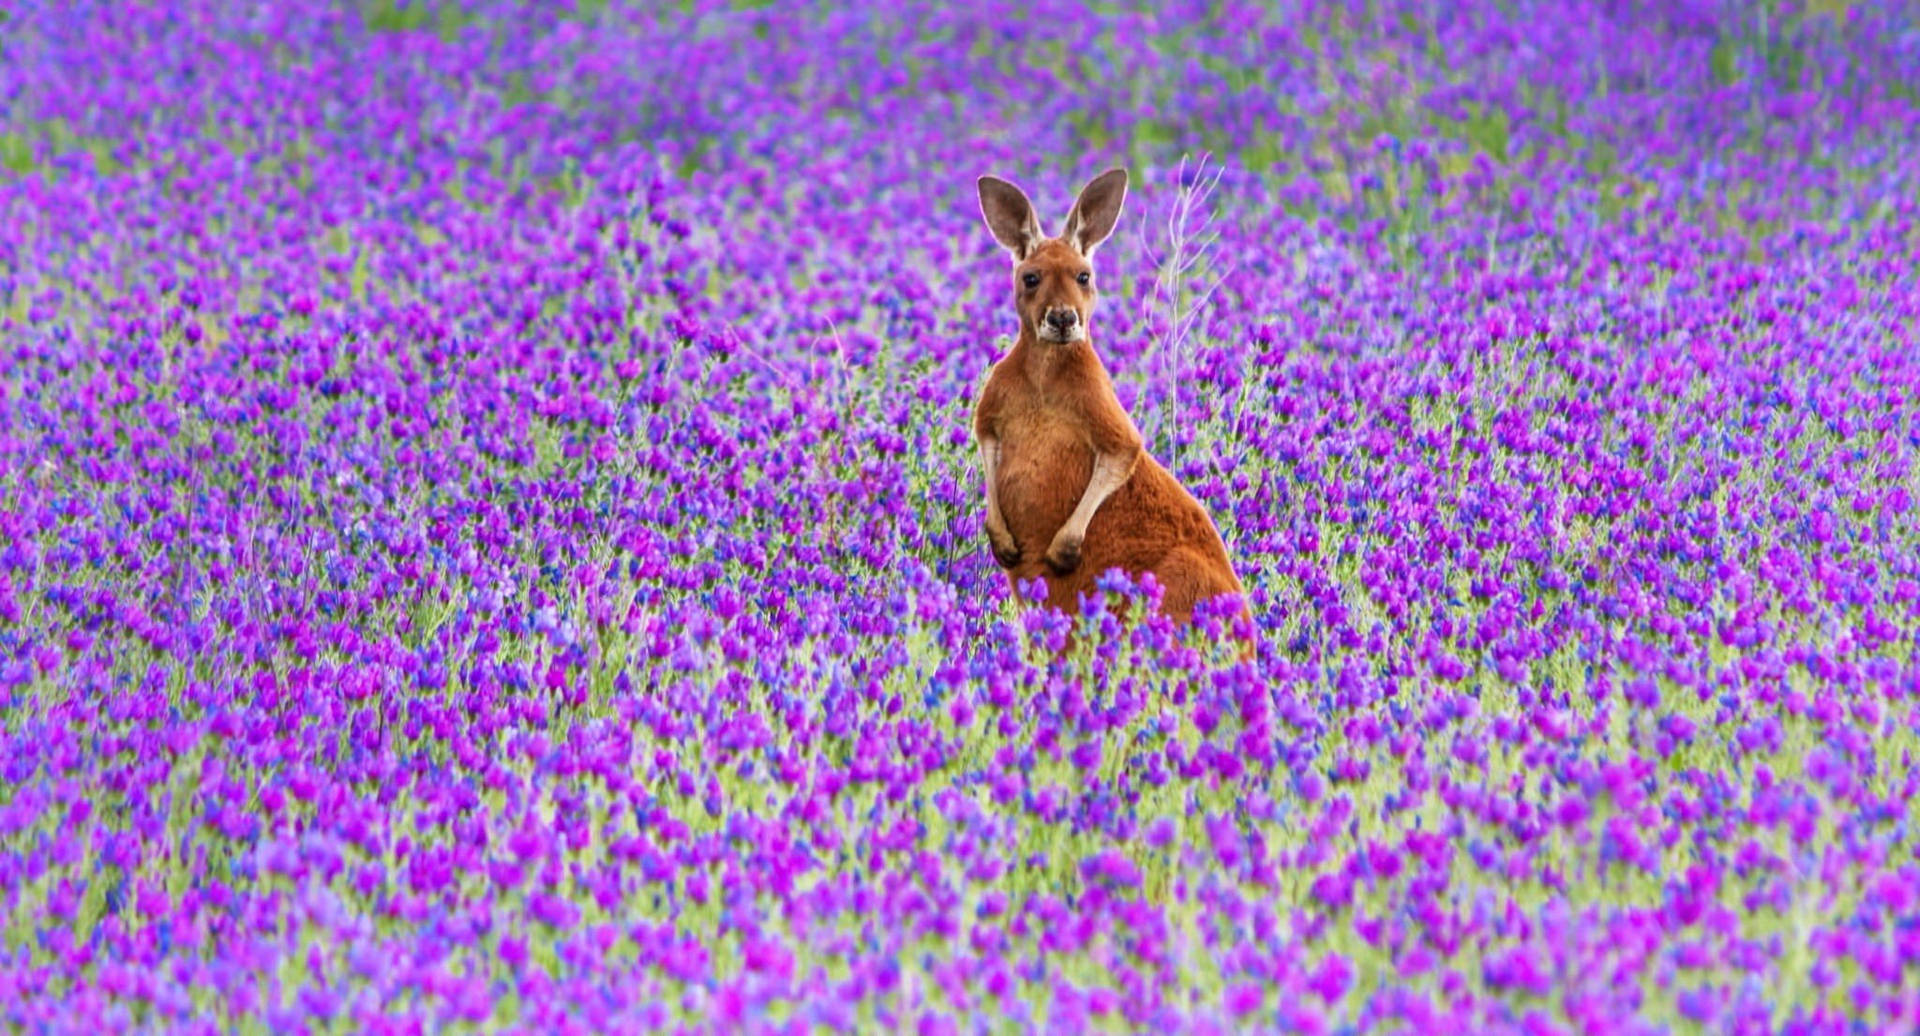 Kangaroo In Purple Flower Field Wallpaper